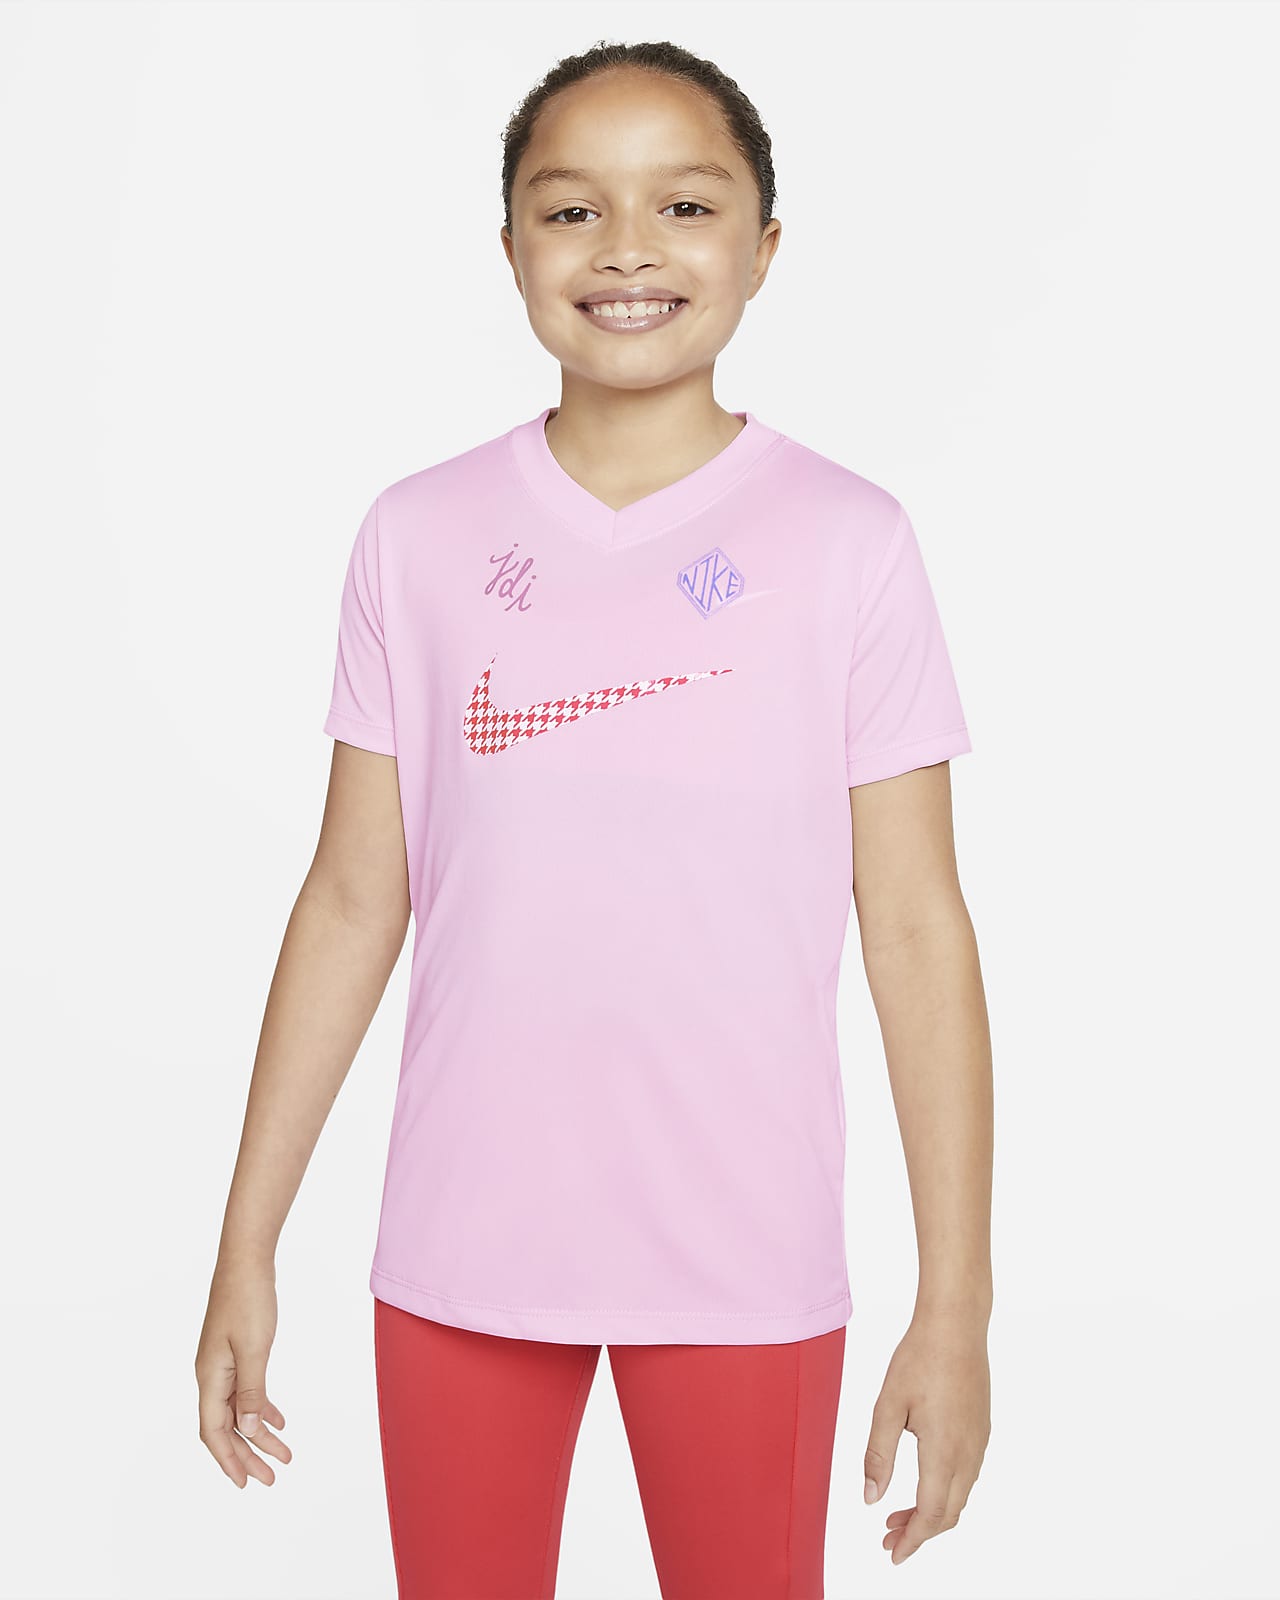 Buy > nike dri fit pink shirt > in stock